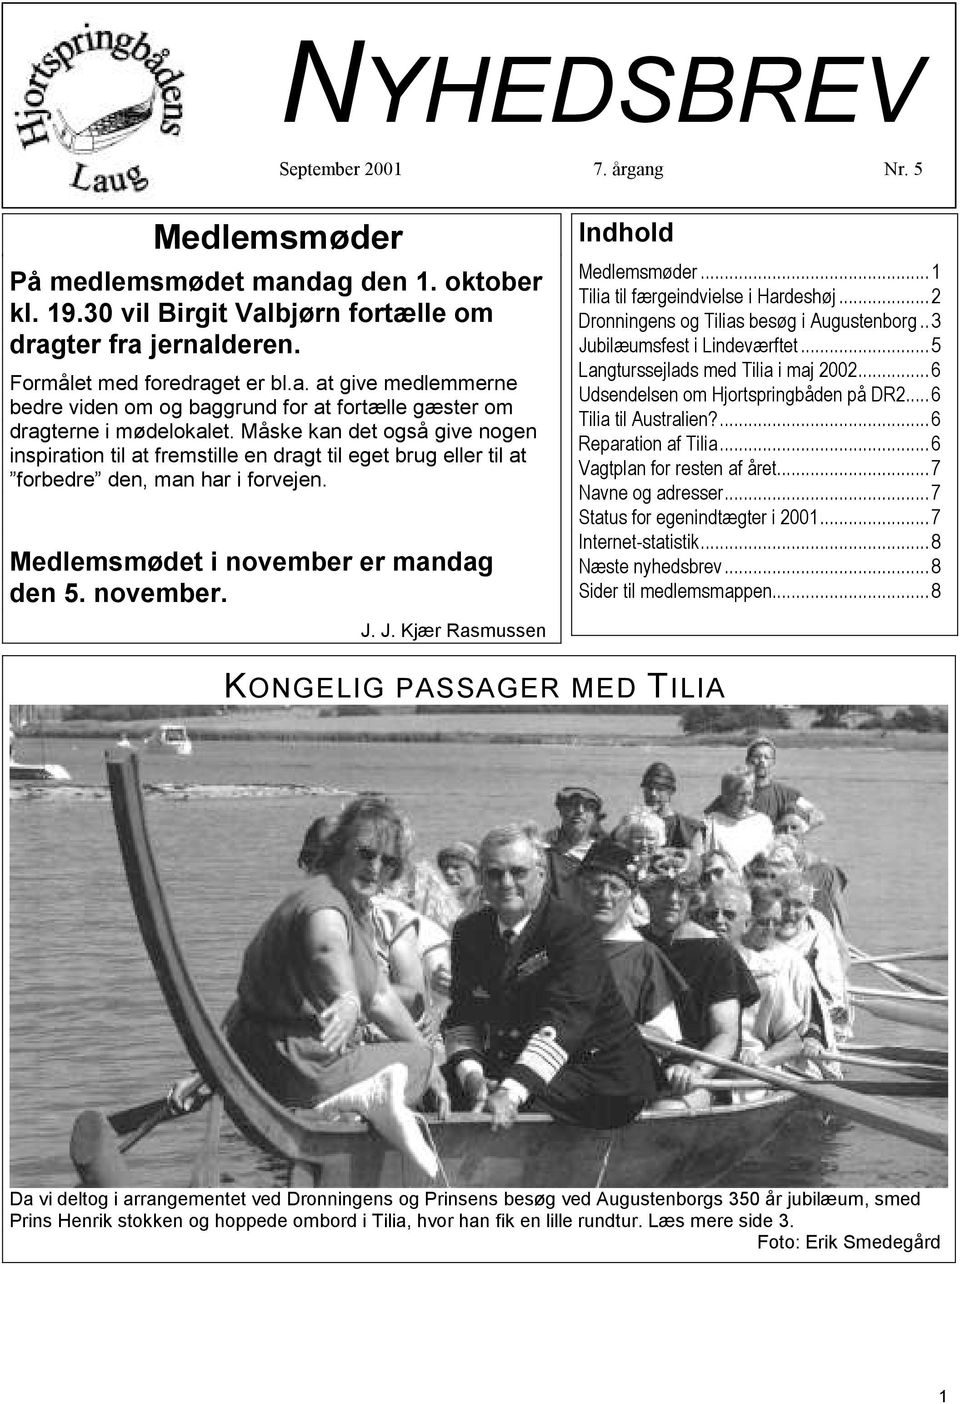 J. Kjær Rasmussen Indhold Medlemsmøder...1 Tilia til færgeindvielse i Hardeshøj...2 Dronningens og Tilias besøg i Augustenborg..3 Jubilæumsfest i Lindeværftet...5 Langturssejlads med Tilia i maj 2002.